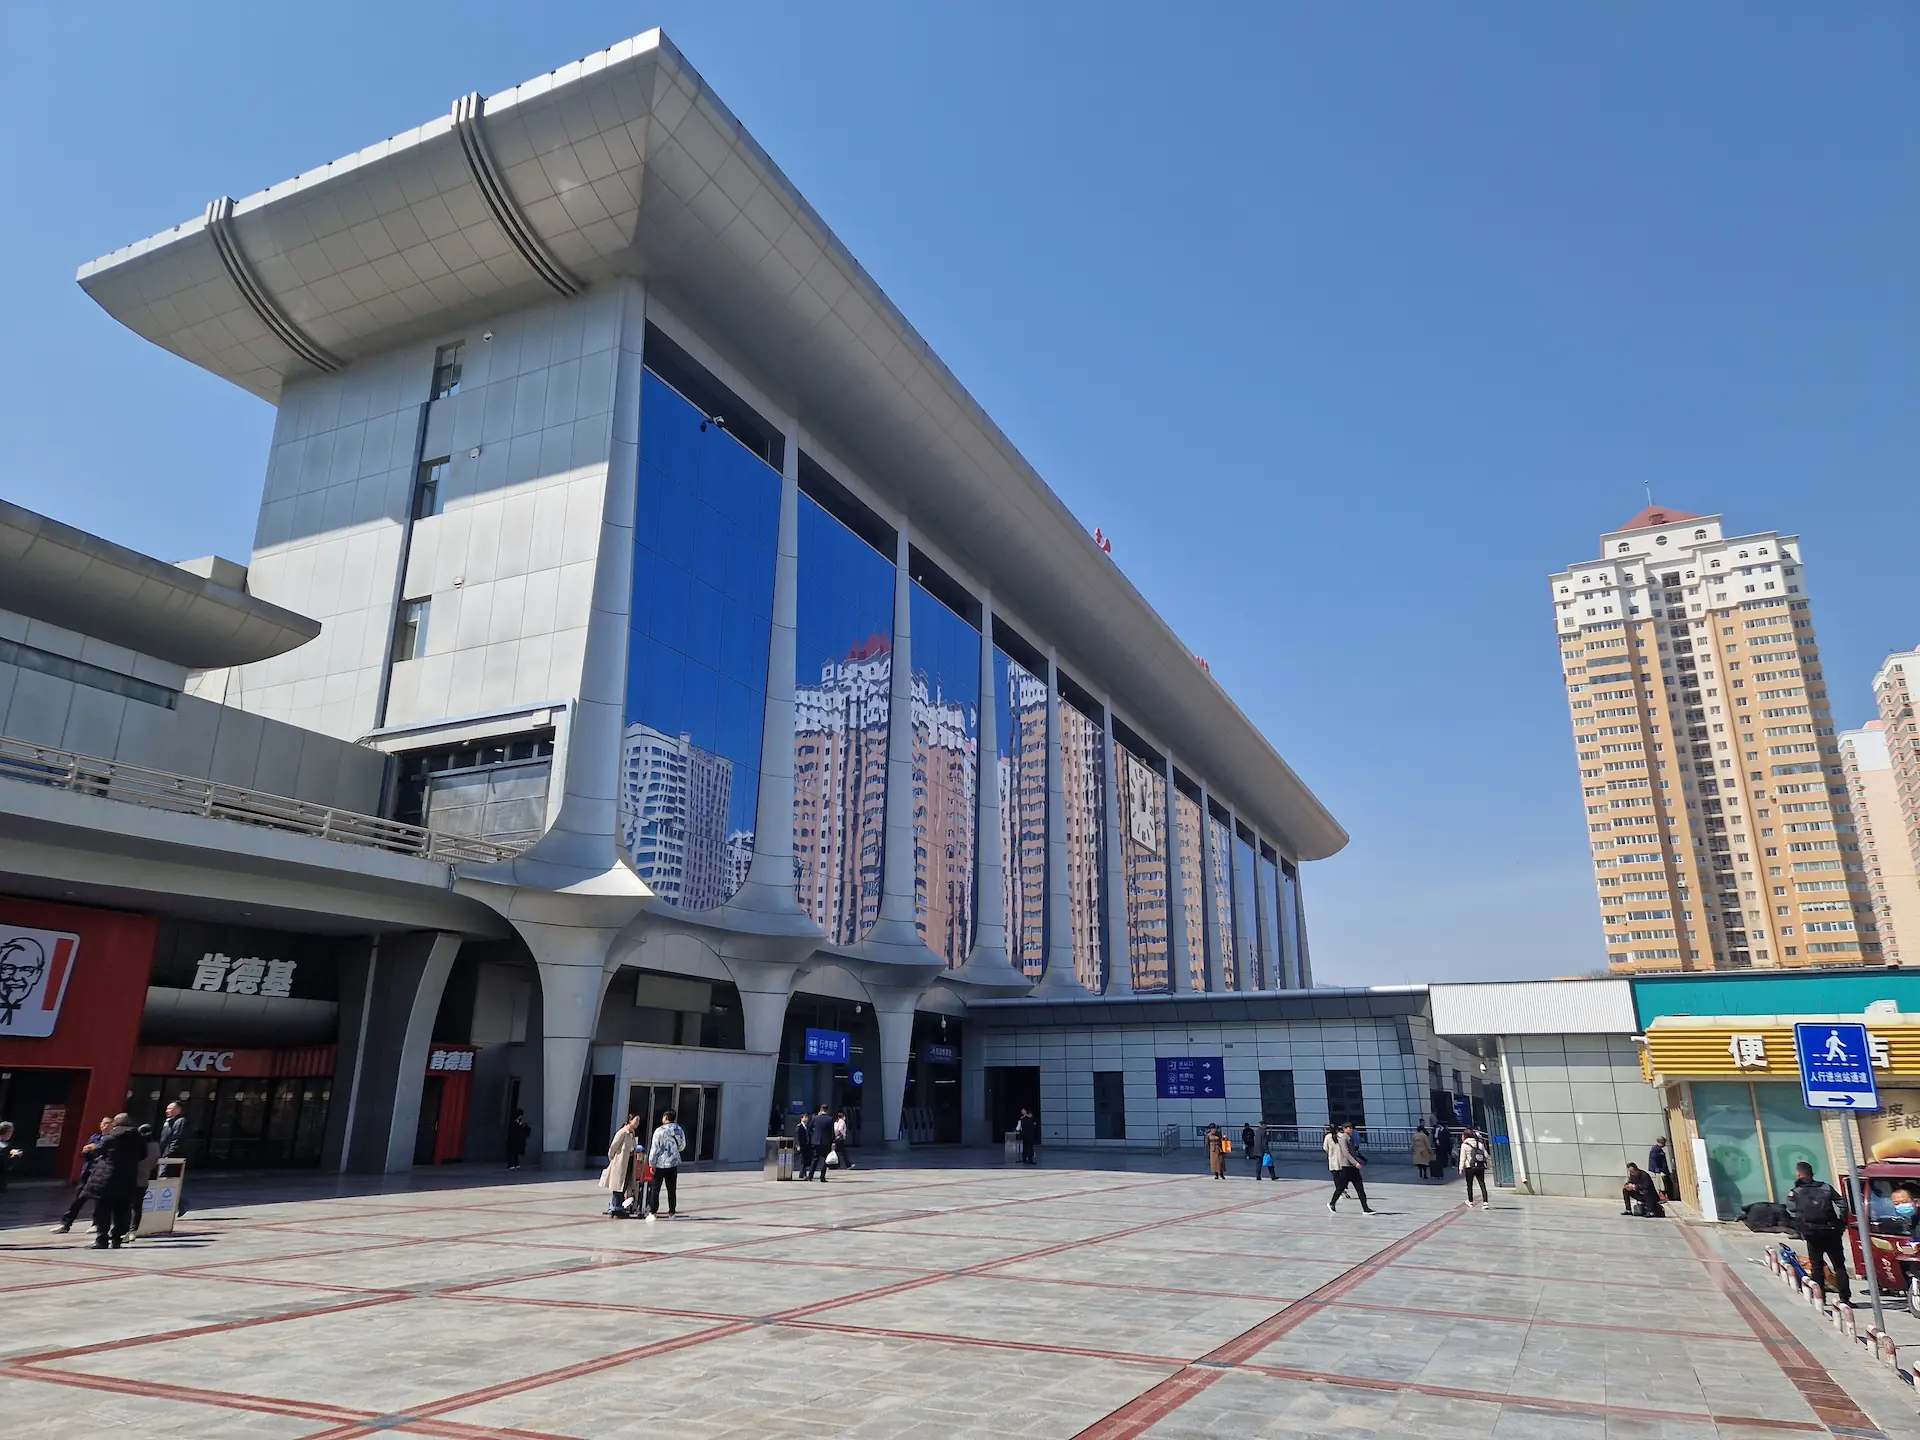 Le bâtiment vitré de la gare centrale de Lanzhou, où se reflètent des tours d'habitation.